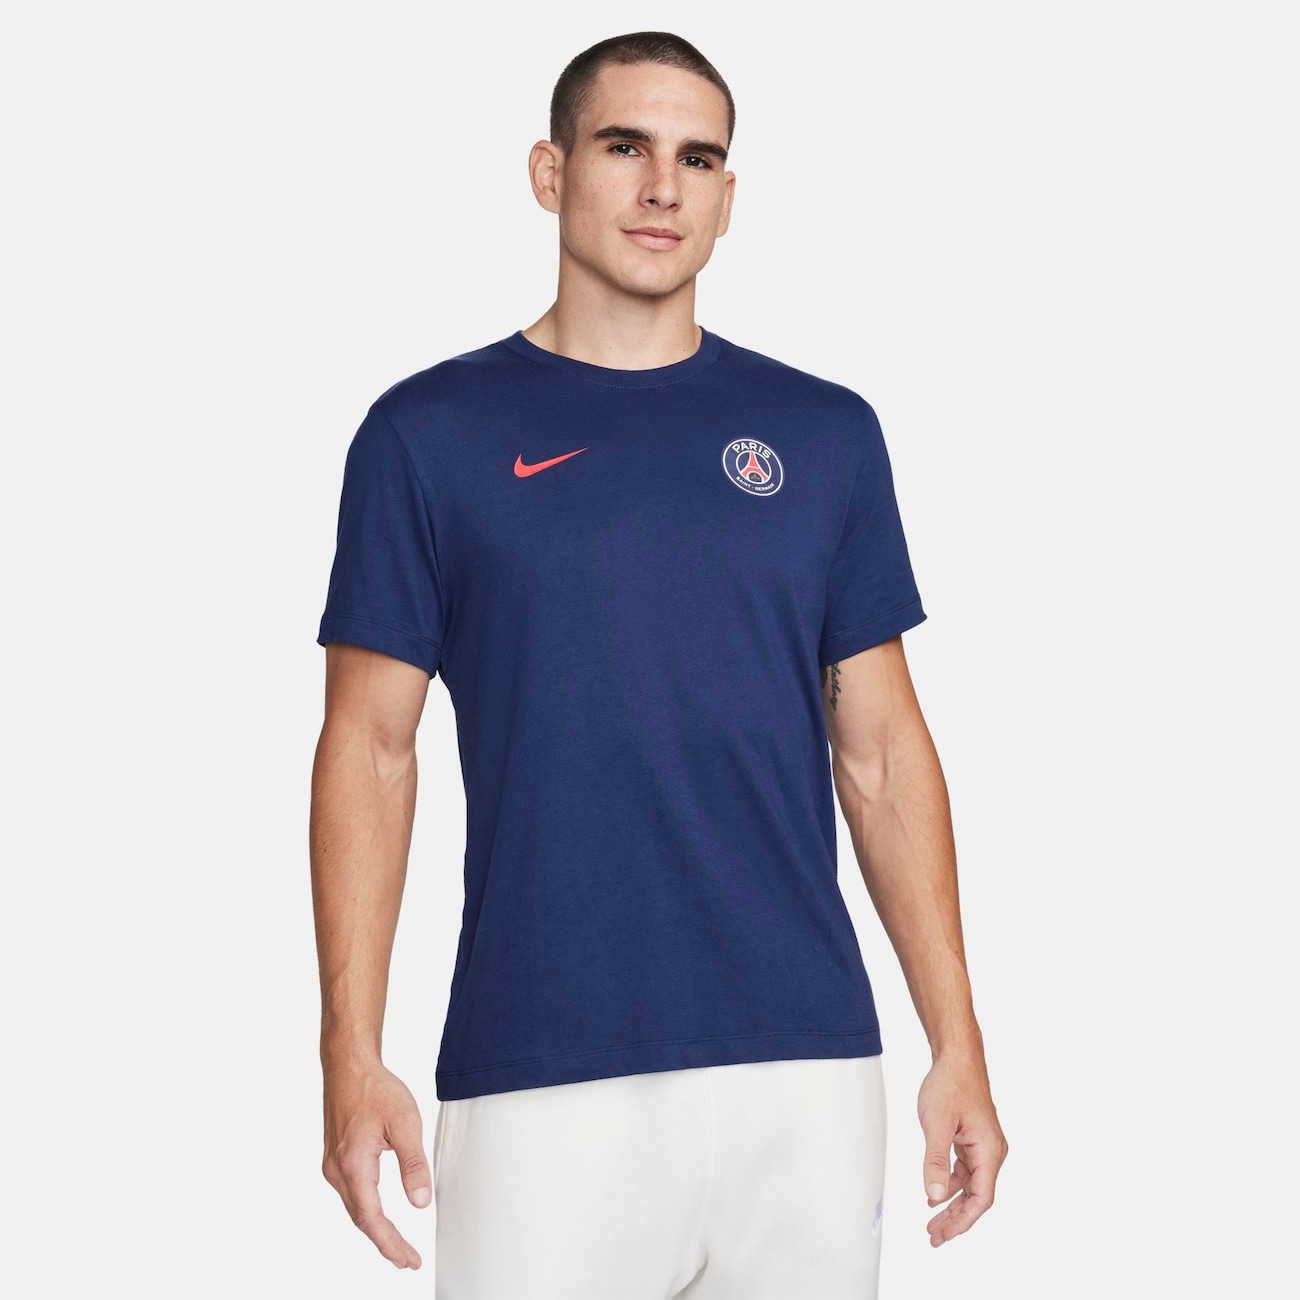 Camiseta Nike PSG Number 10 Masculina